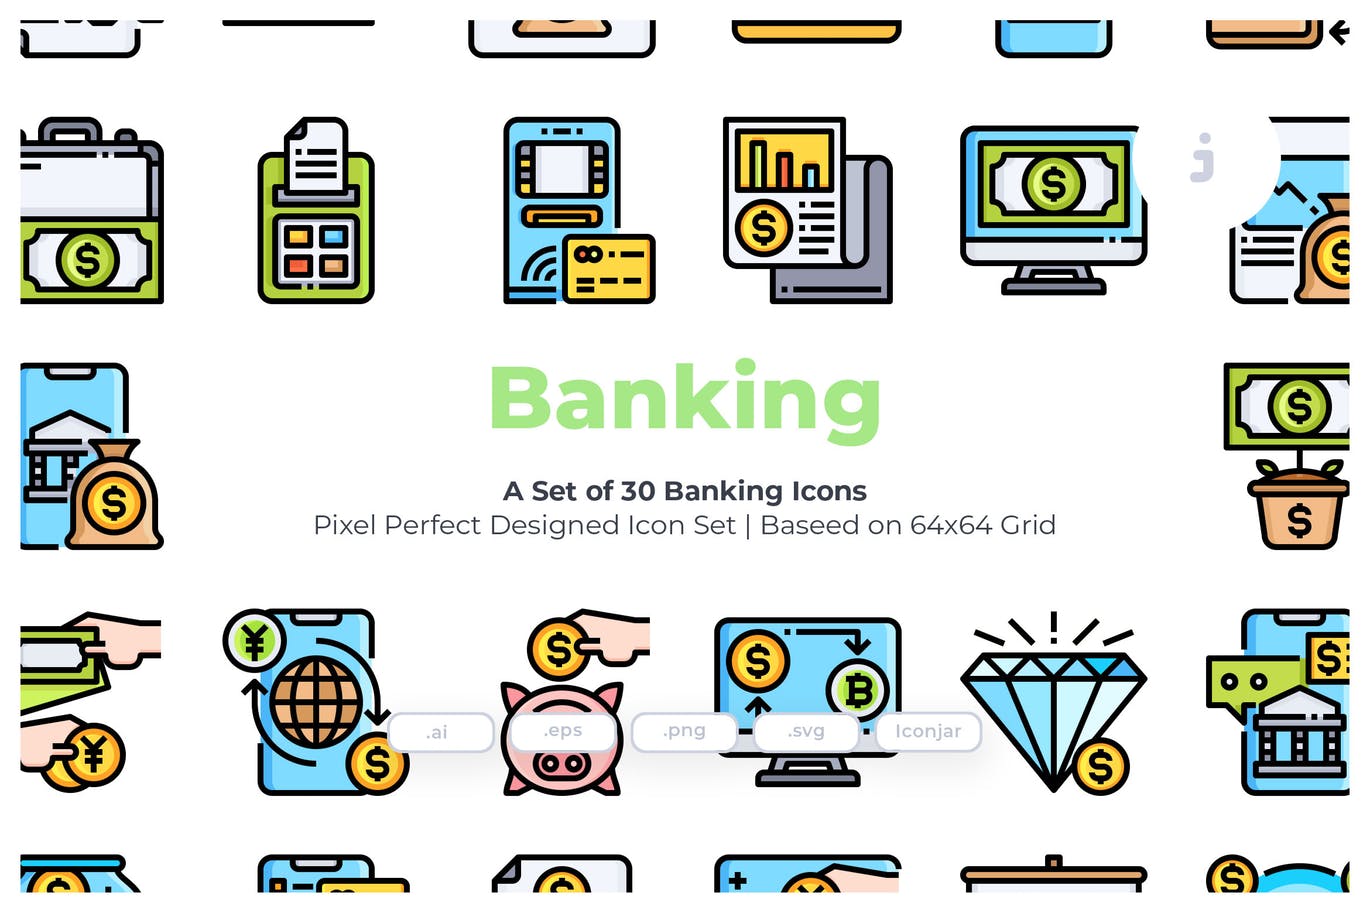 银行主题矢量图标素材 30 Banking Icons